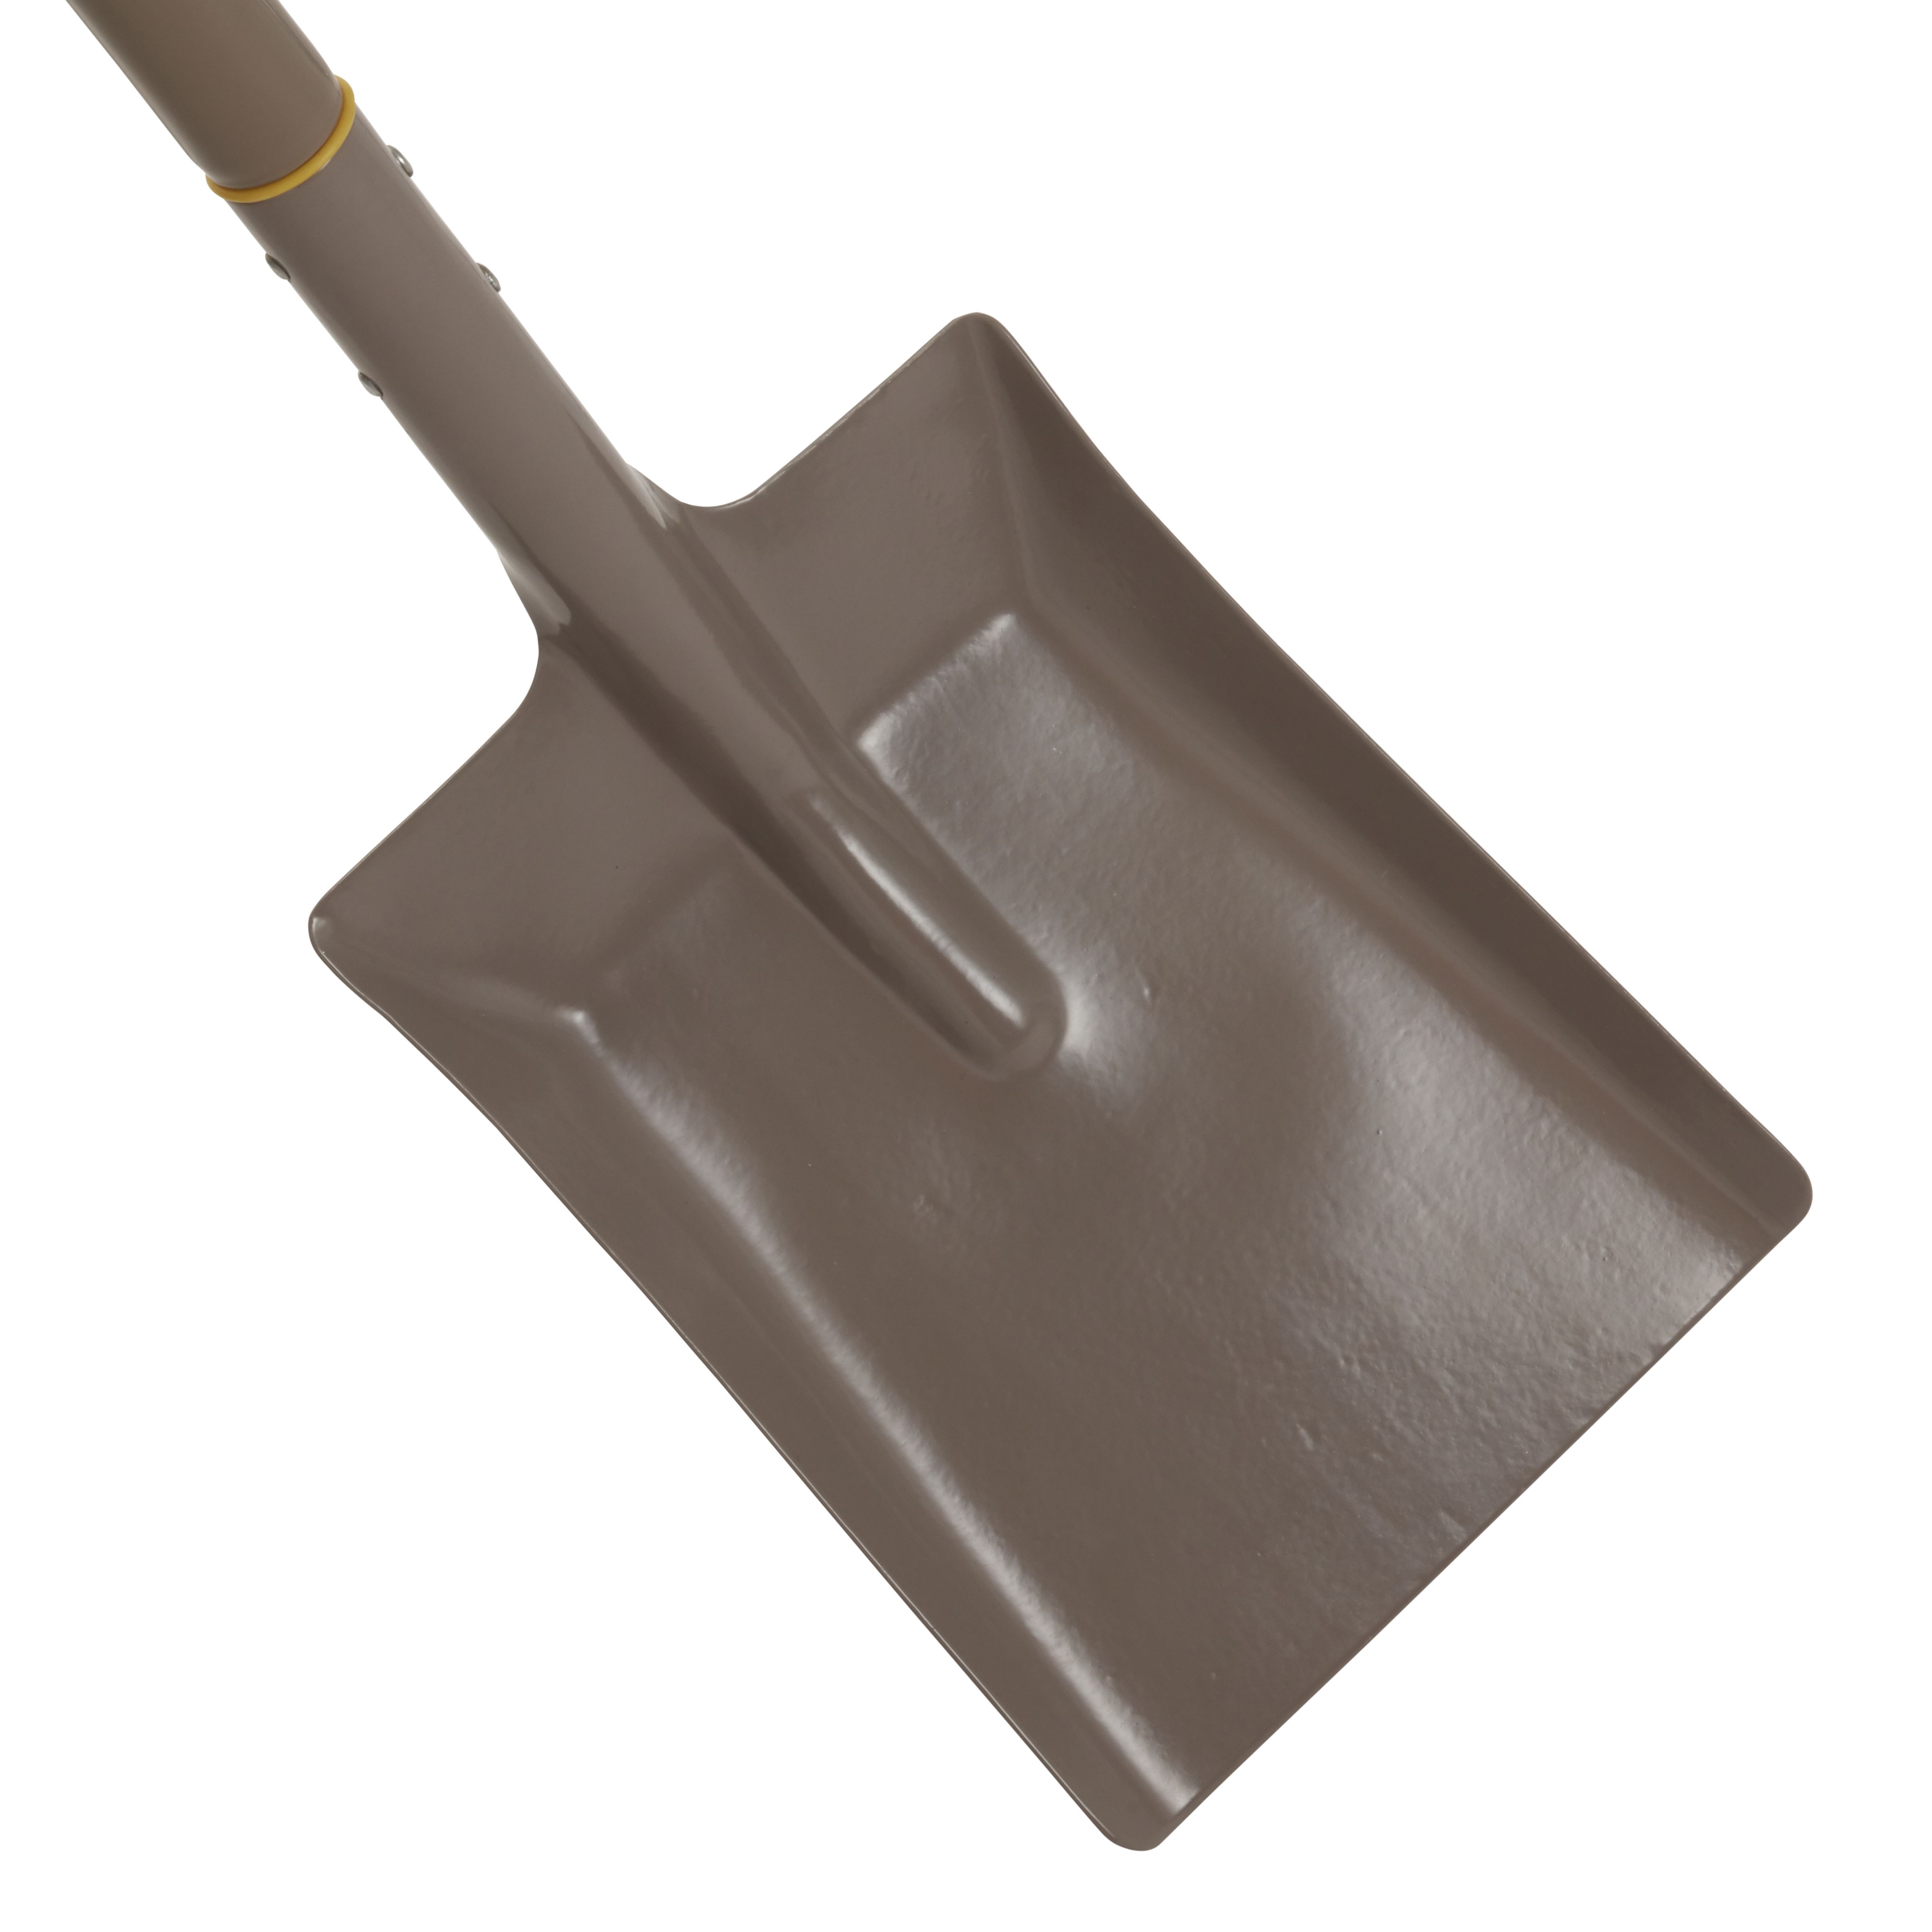 Metal Square D Handle Shovel SH1